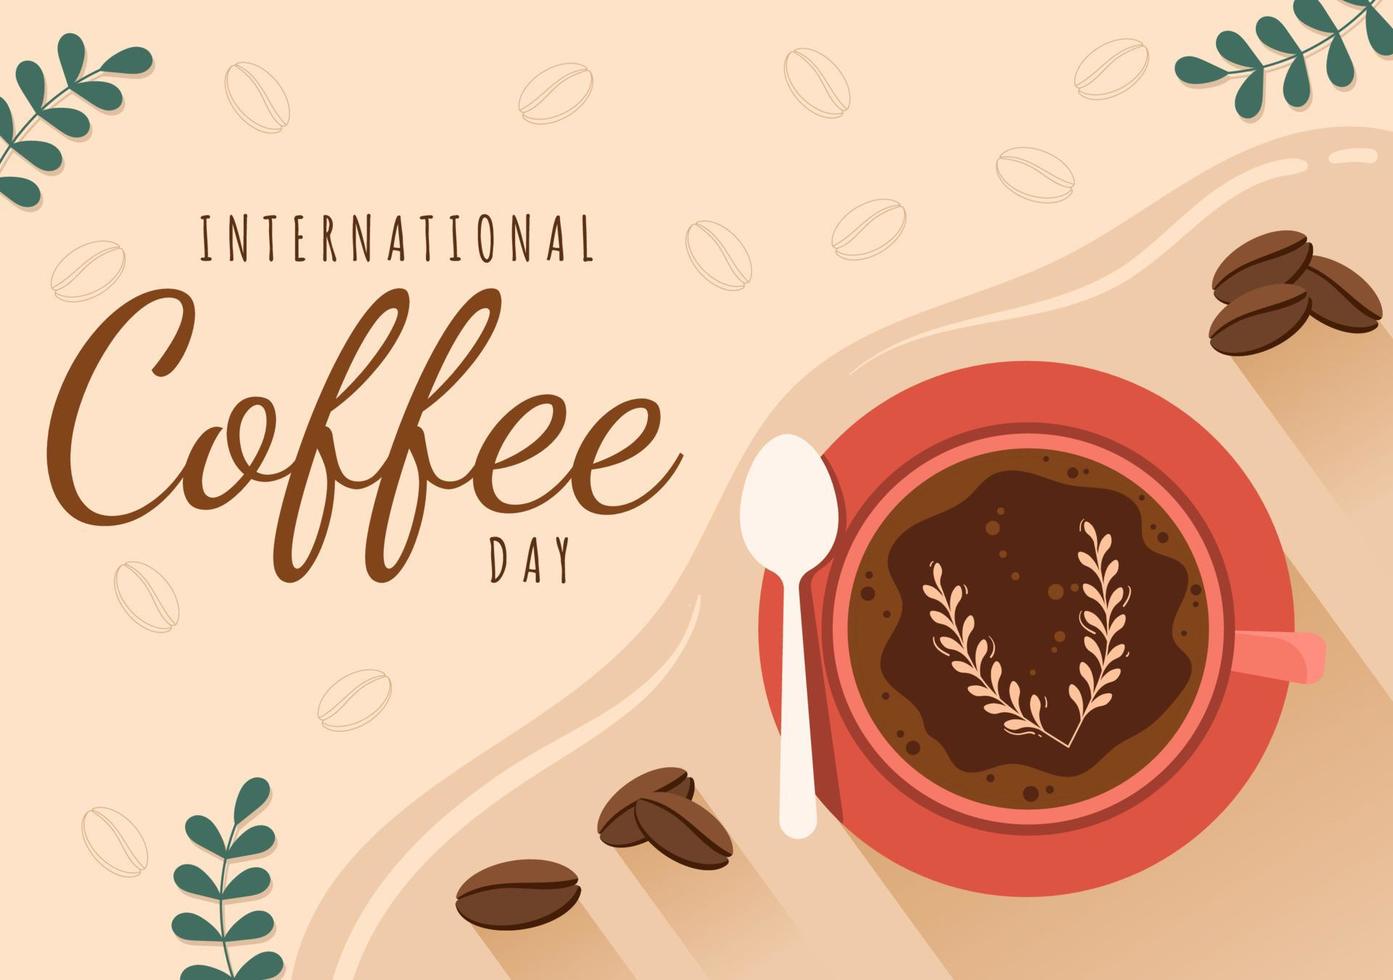 internationaler kaffeetag am 1. oktober handgezeichnete cartoon flache illustration mit kakaobohnen und einem glas heißgetränk design vektor